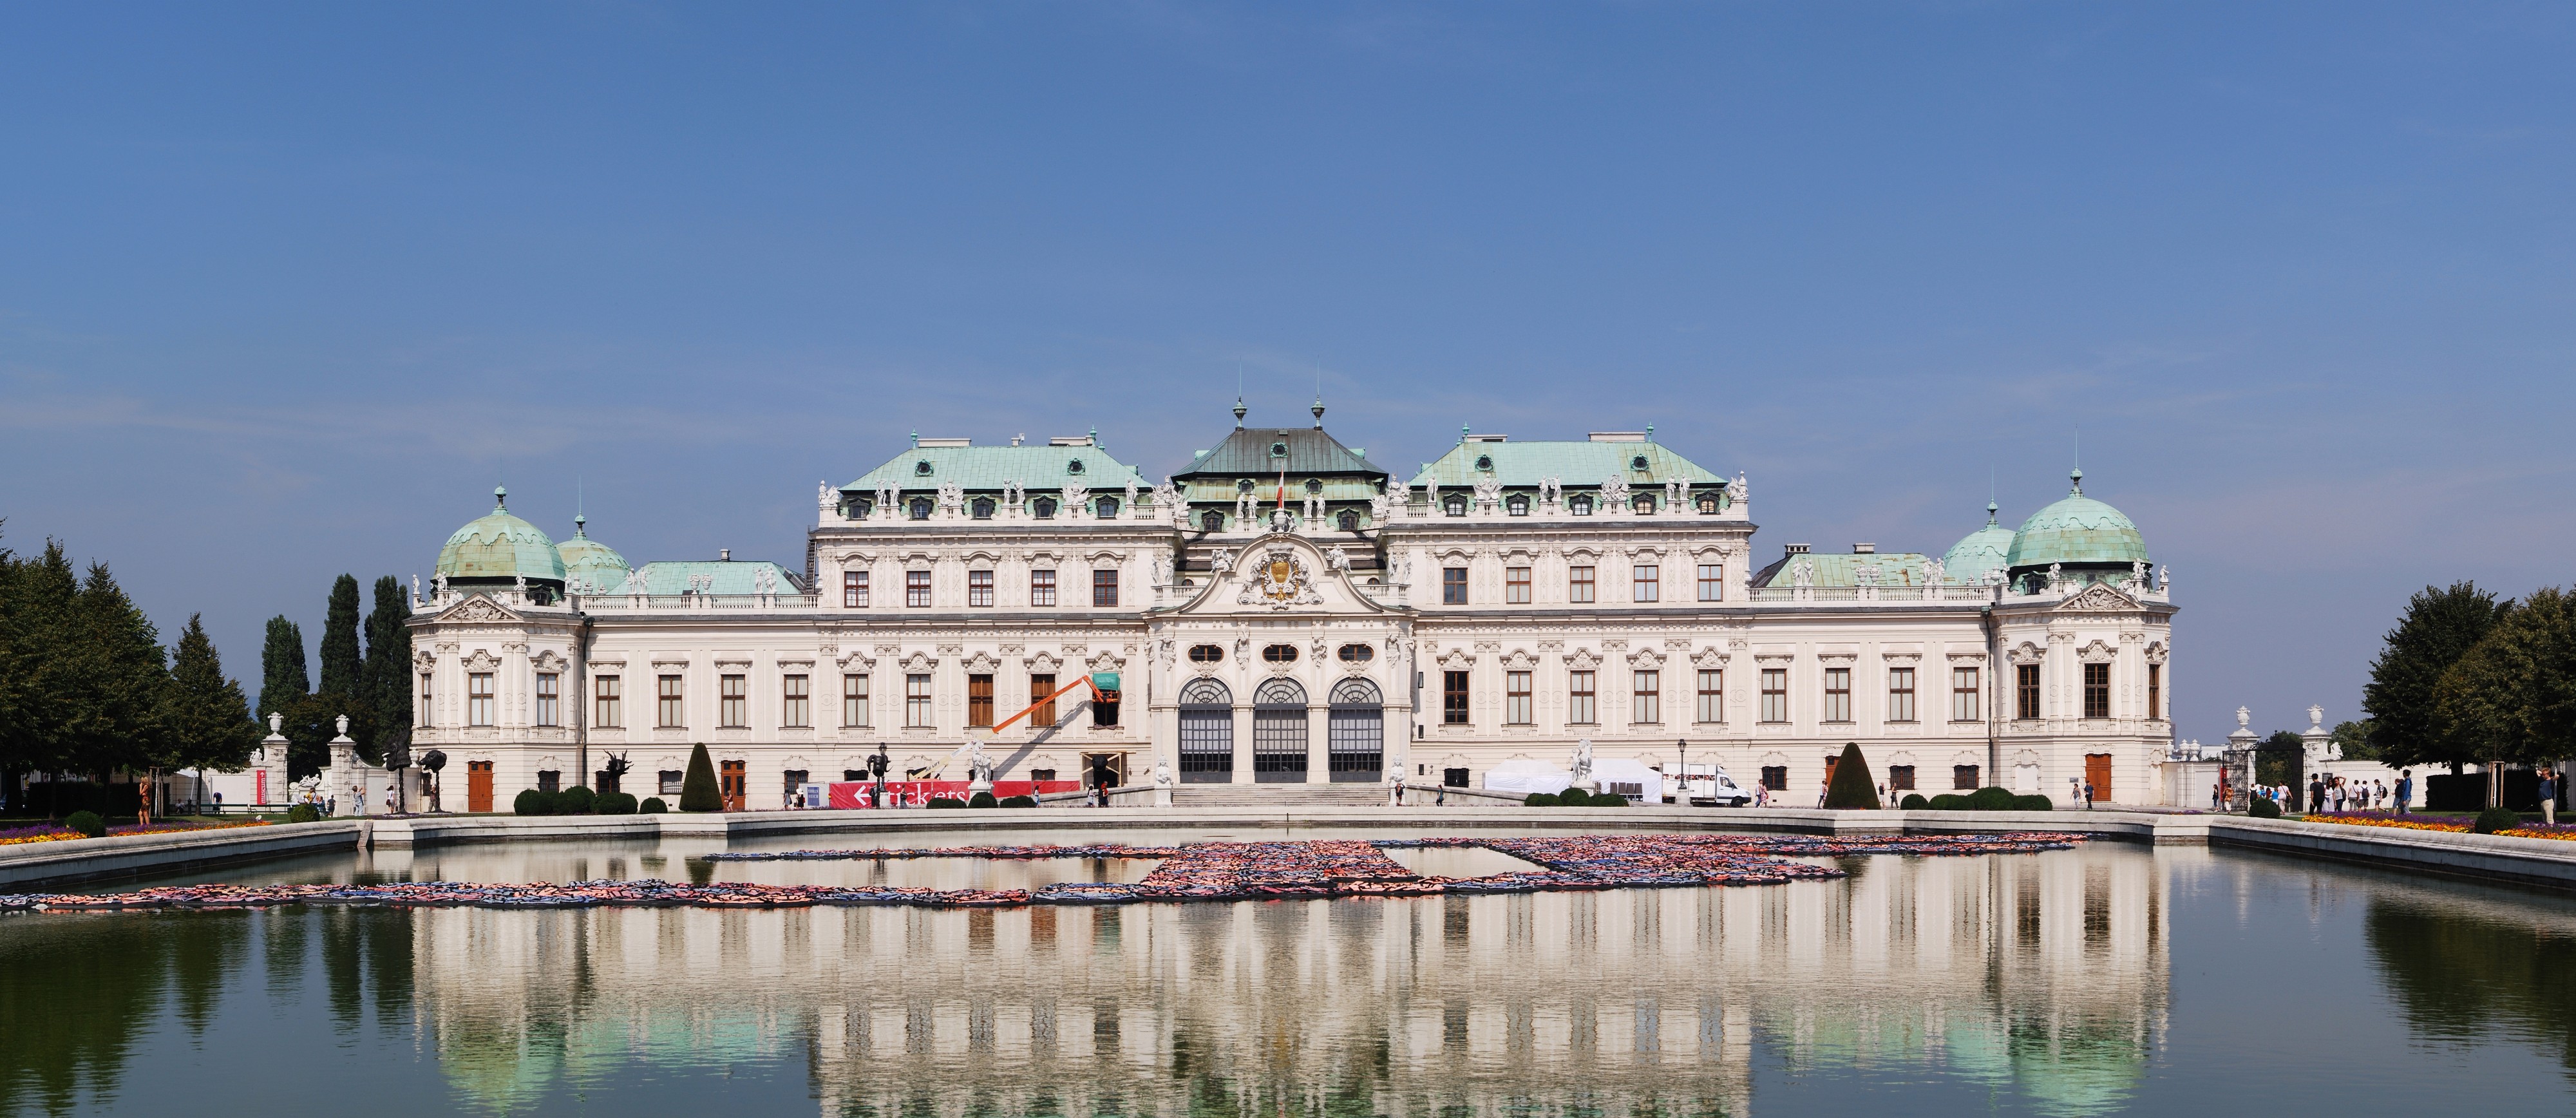 Oberes Belvedere Wien September 2016